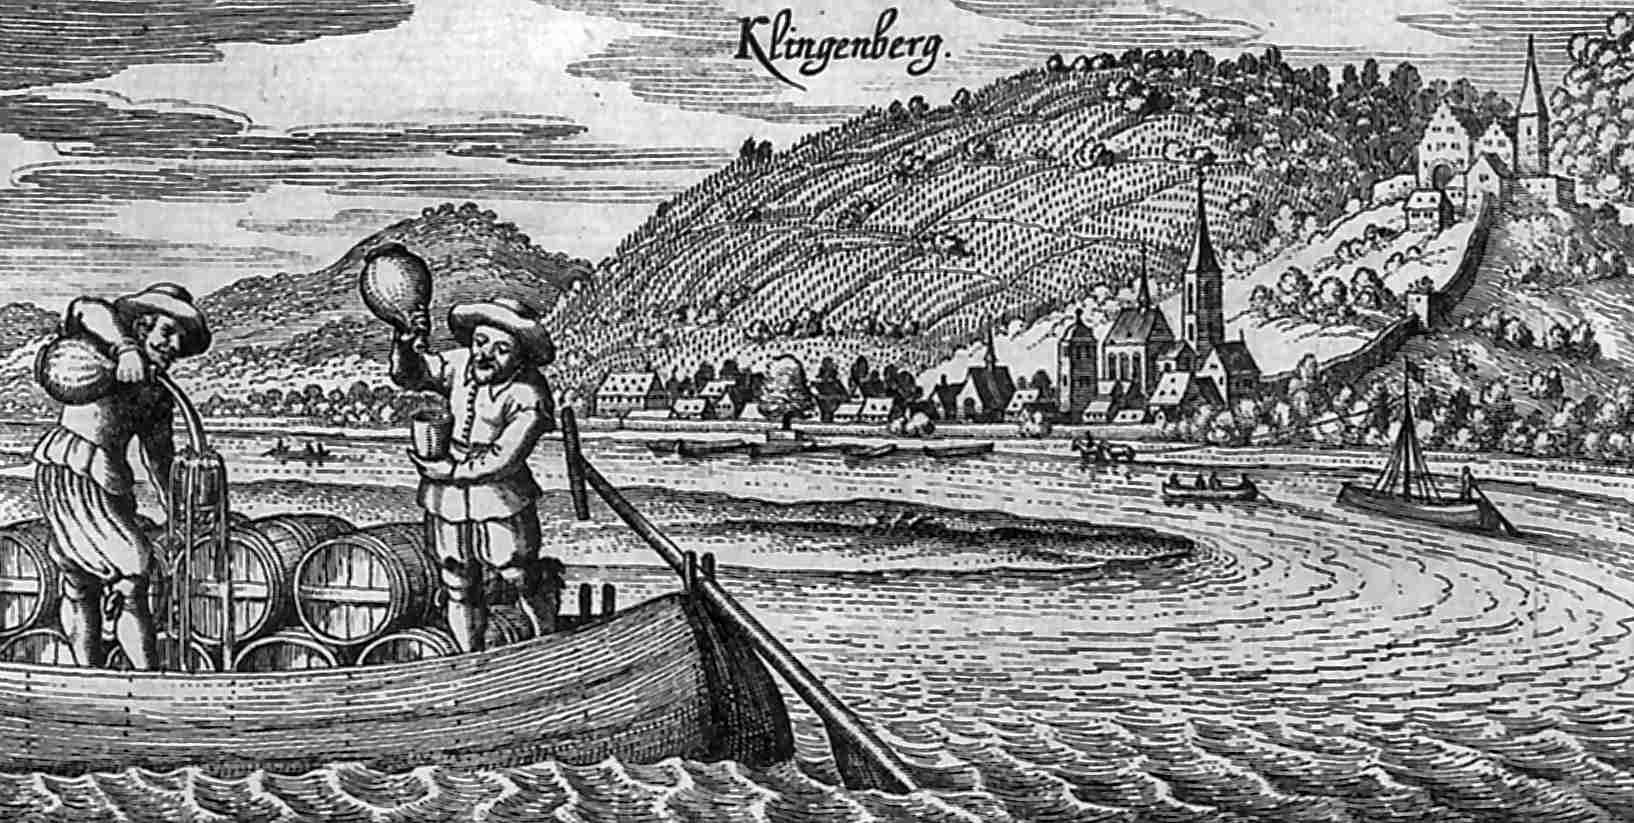 Wein Merian Klingenberg mit Boot